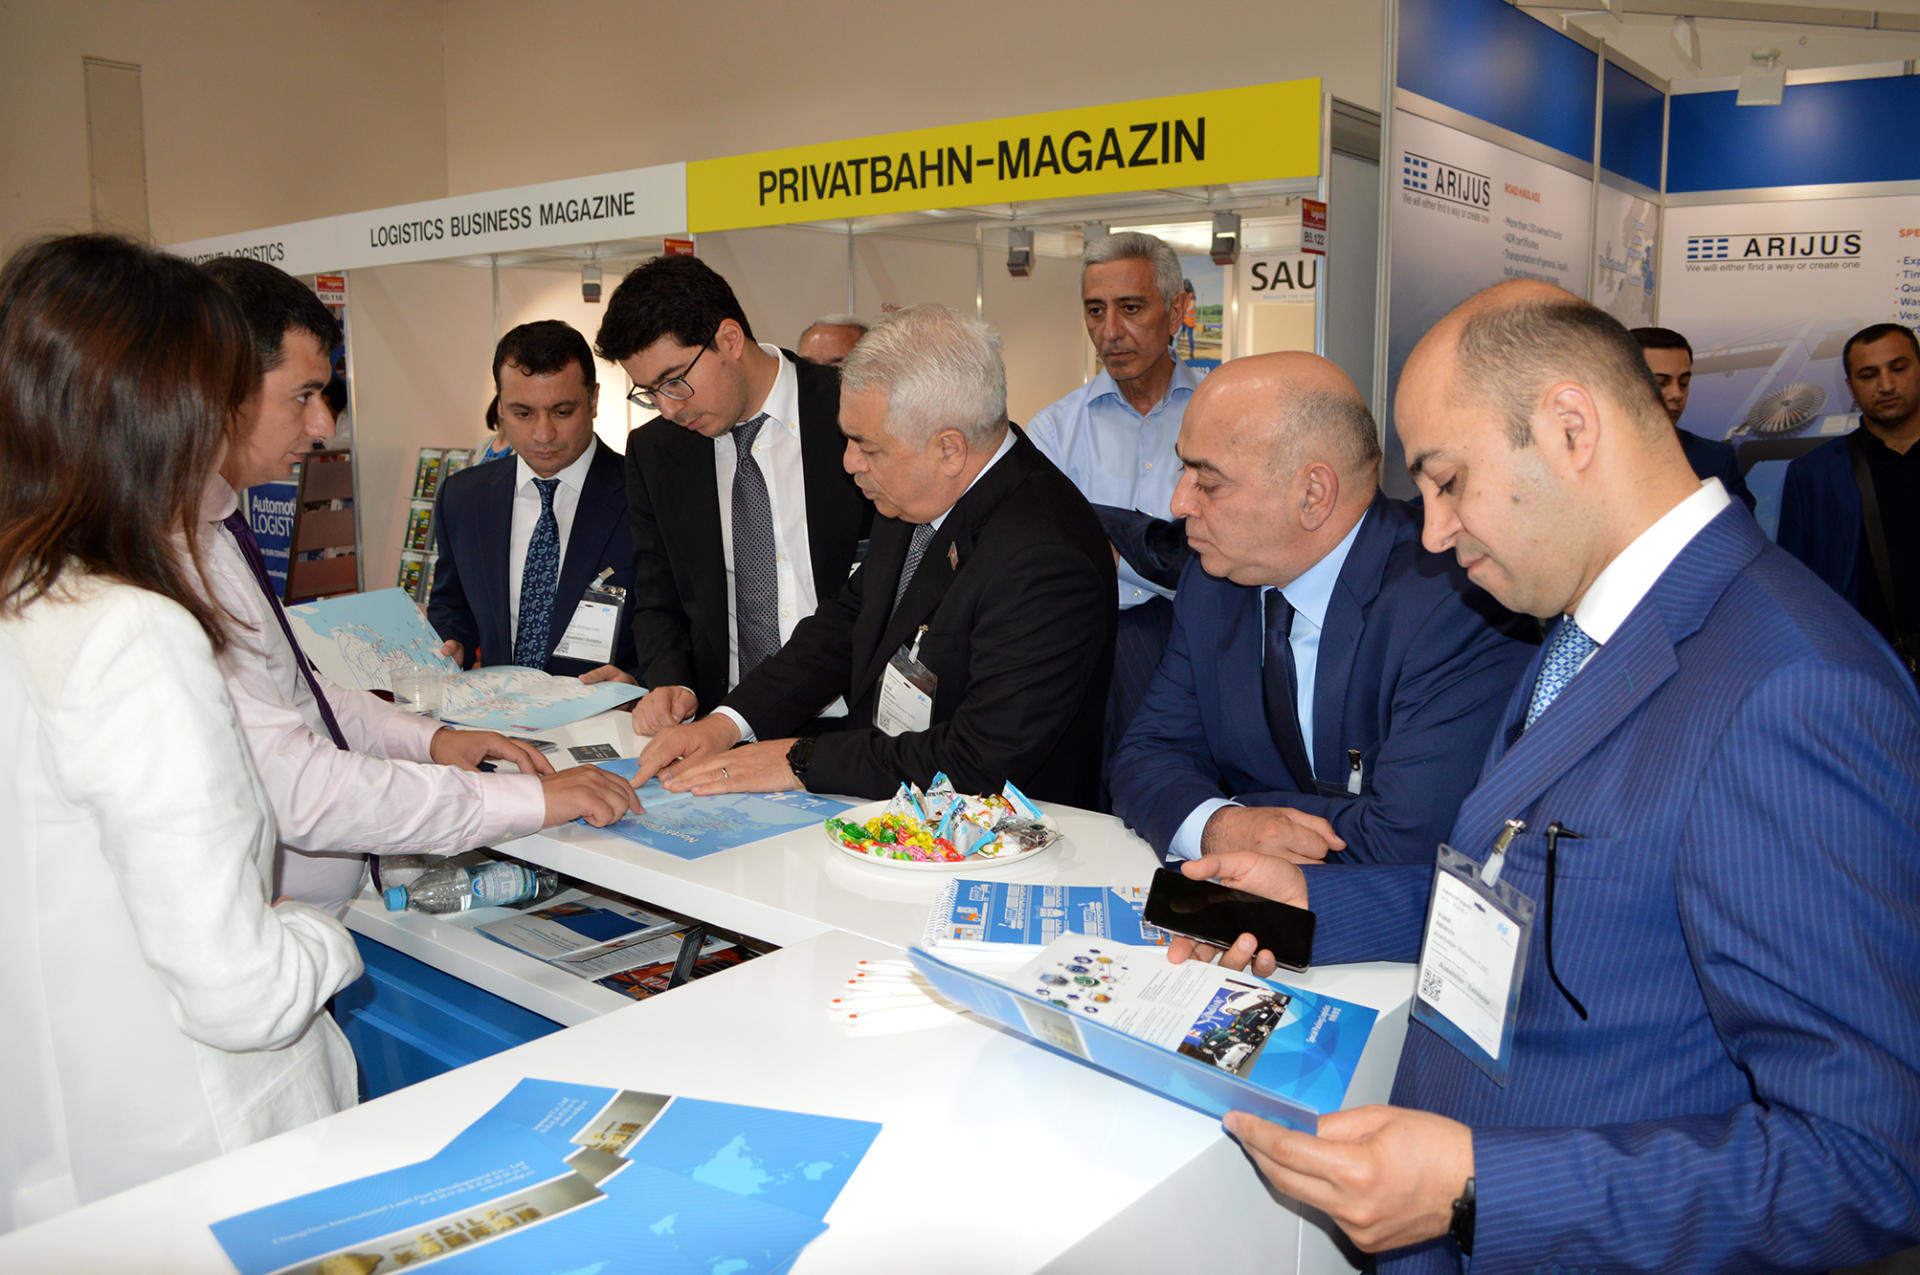 Азербайджан впервые представлен на крупнейшей транспортной выставке Европы (ФОТО)